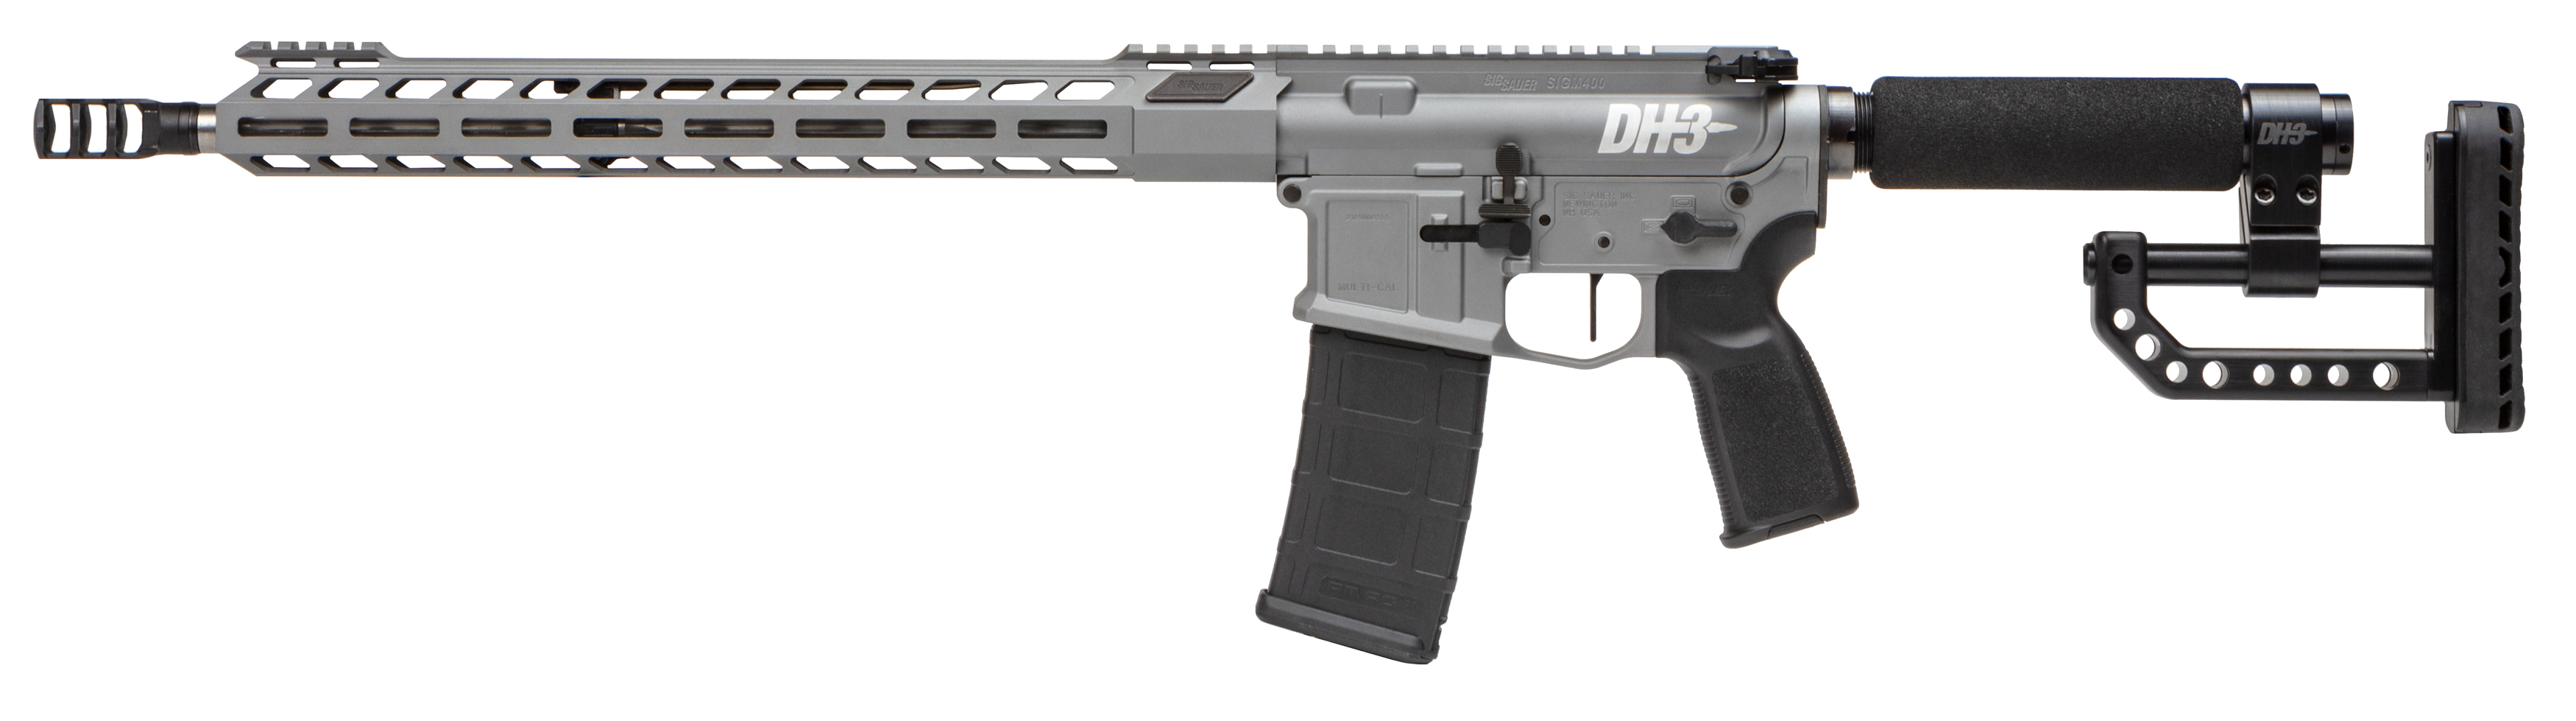 M400-DH3 Rifle